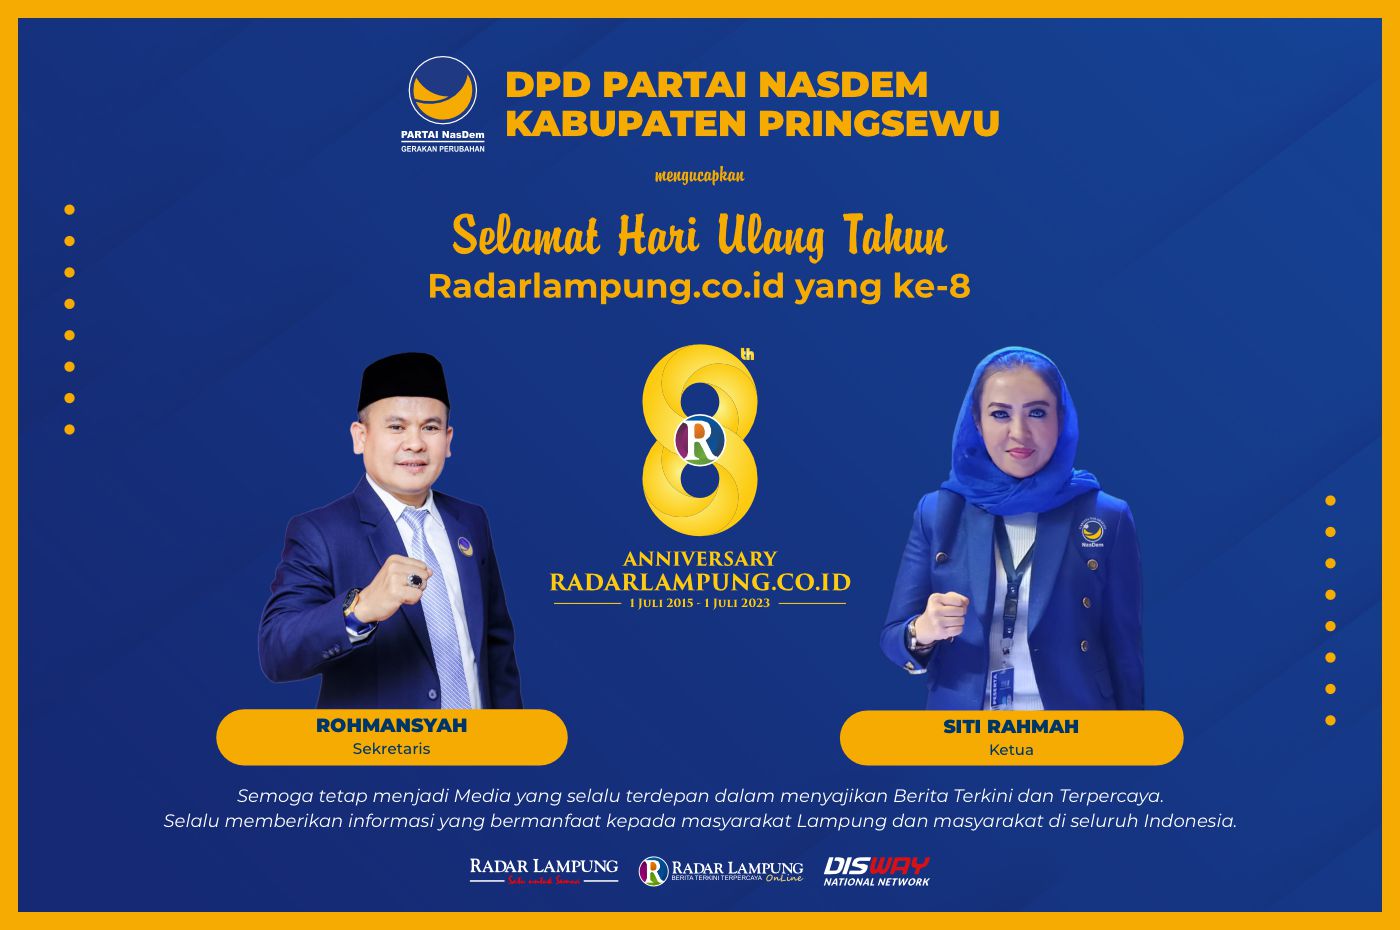 DPD Partai NasDem Kabupaten Pringsewu: Selamat HUT ke-8 Radar Lampung Online